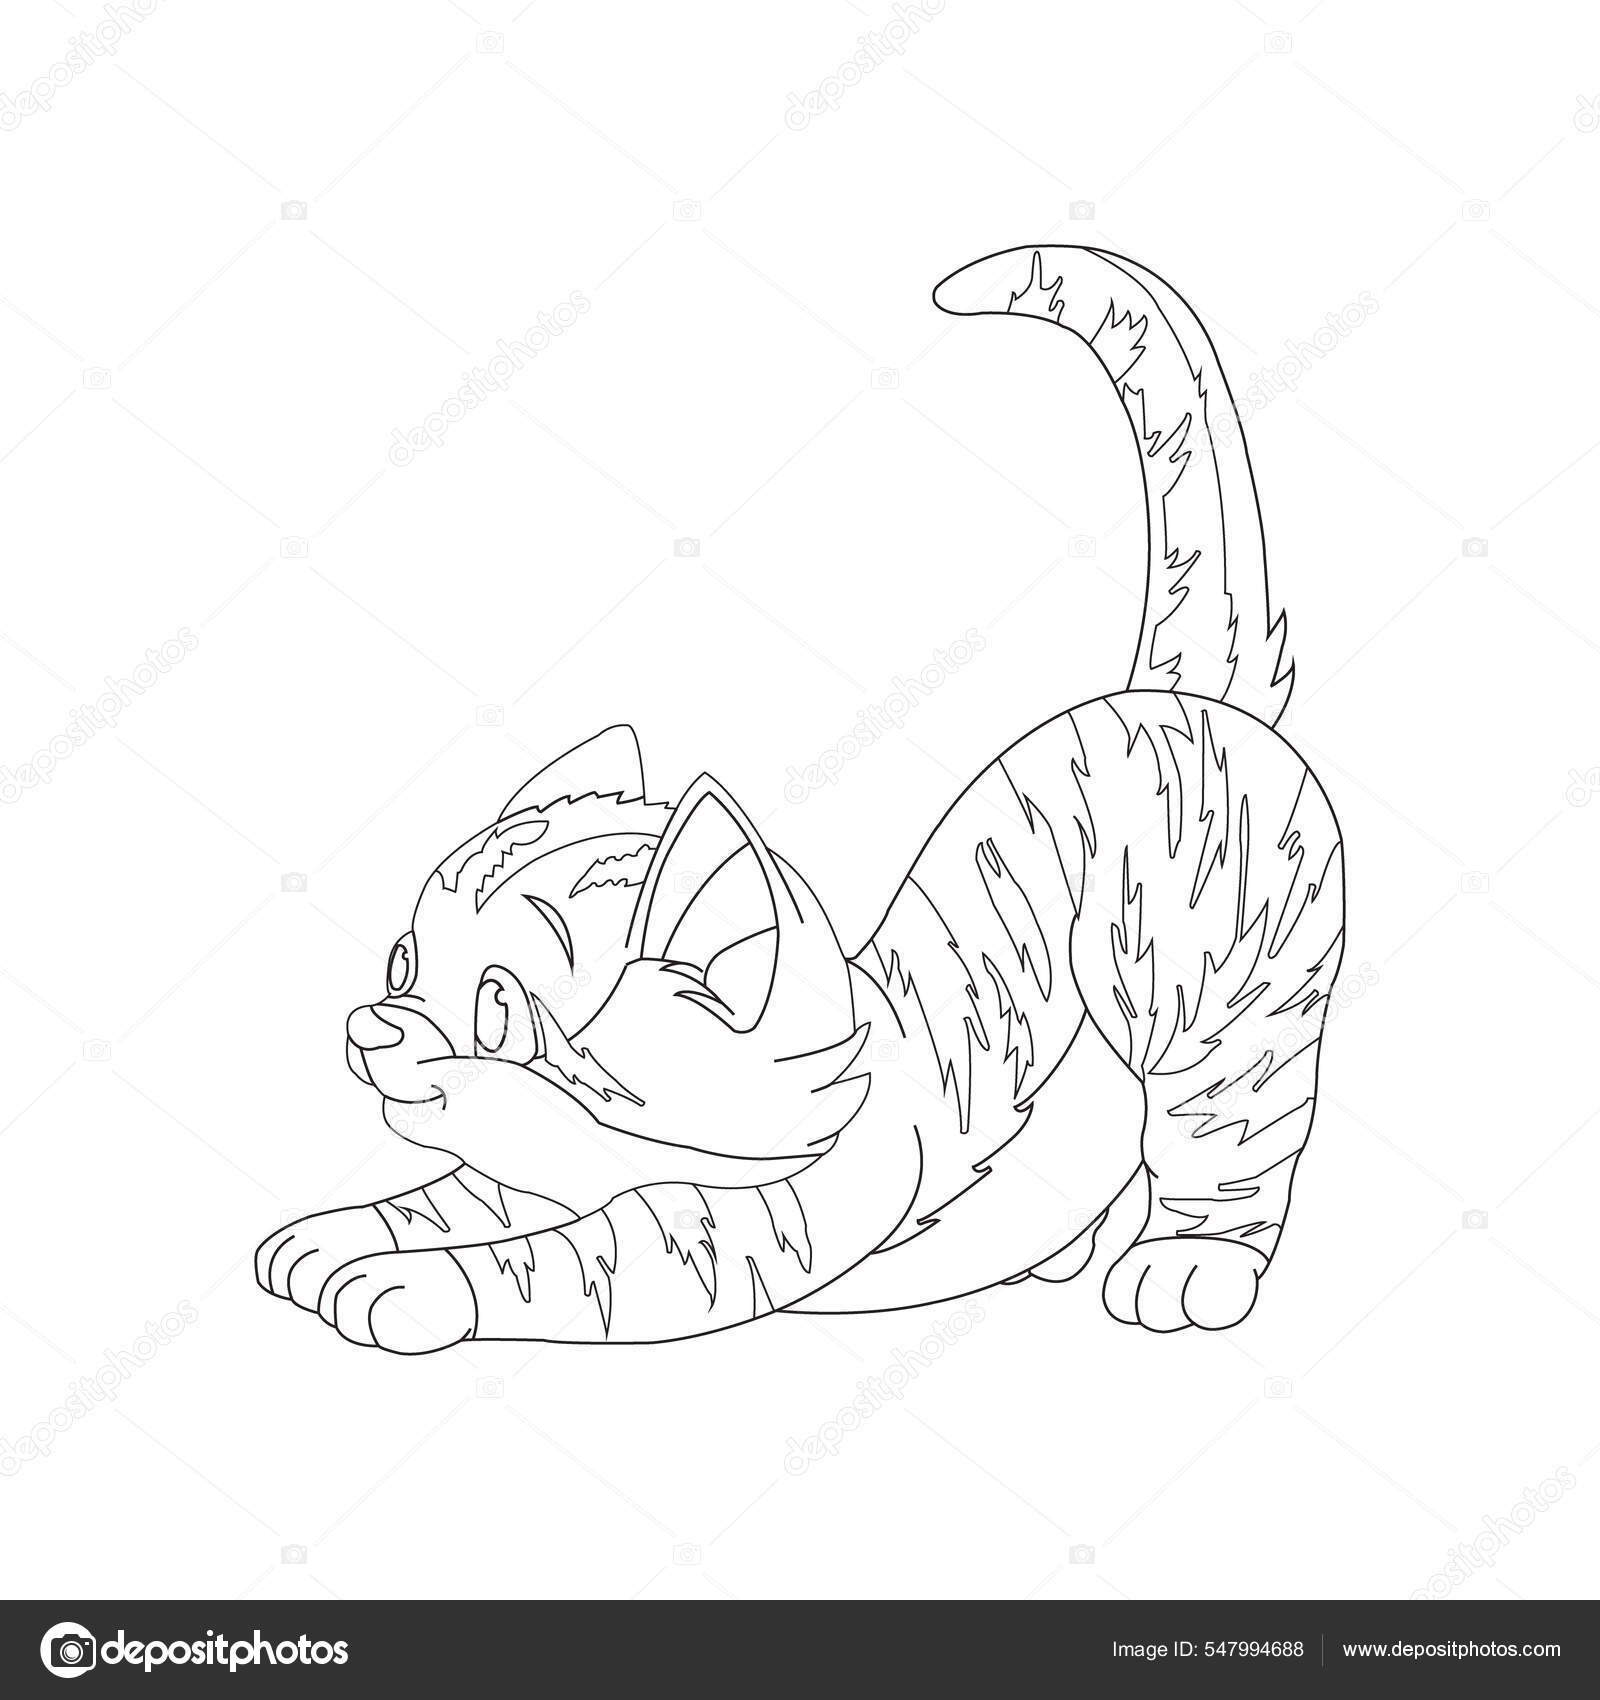 Esboço Da Página Da Coloração Do Gato Dos Desenhos Animados Com